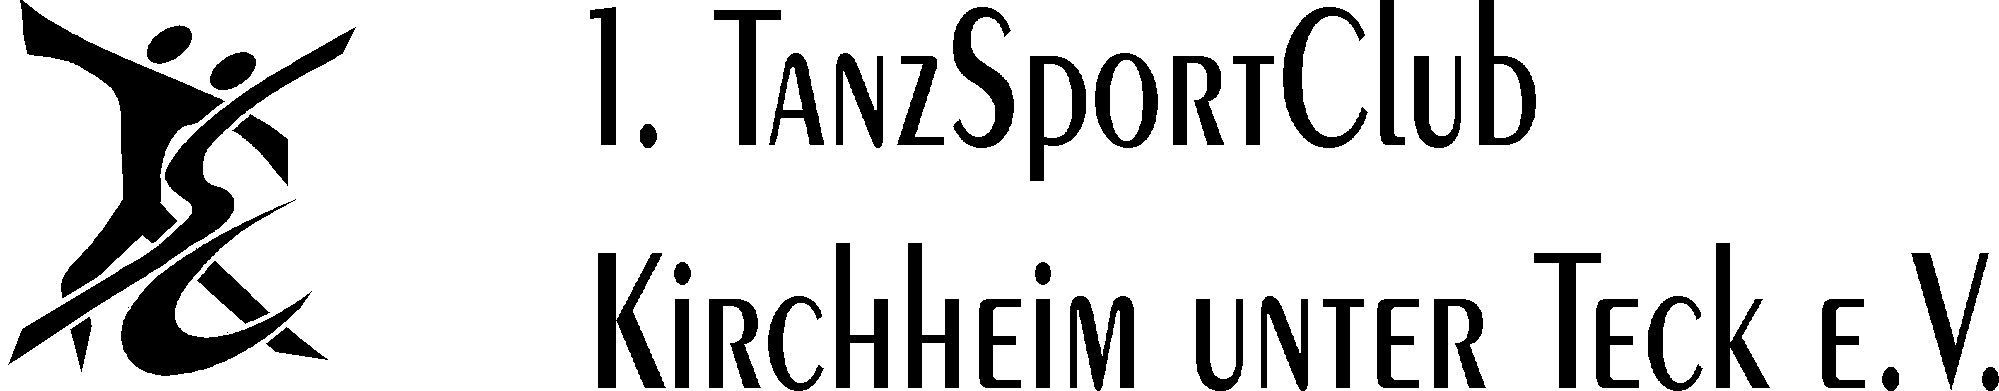 TSC Kirchheim